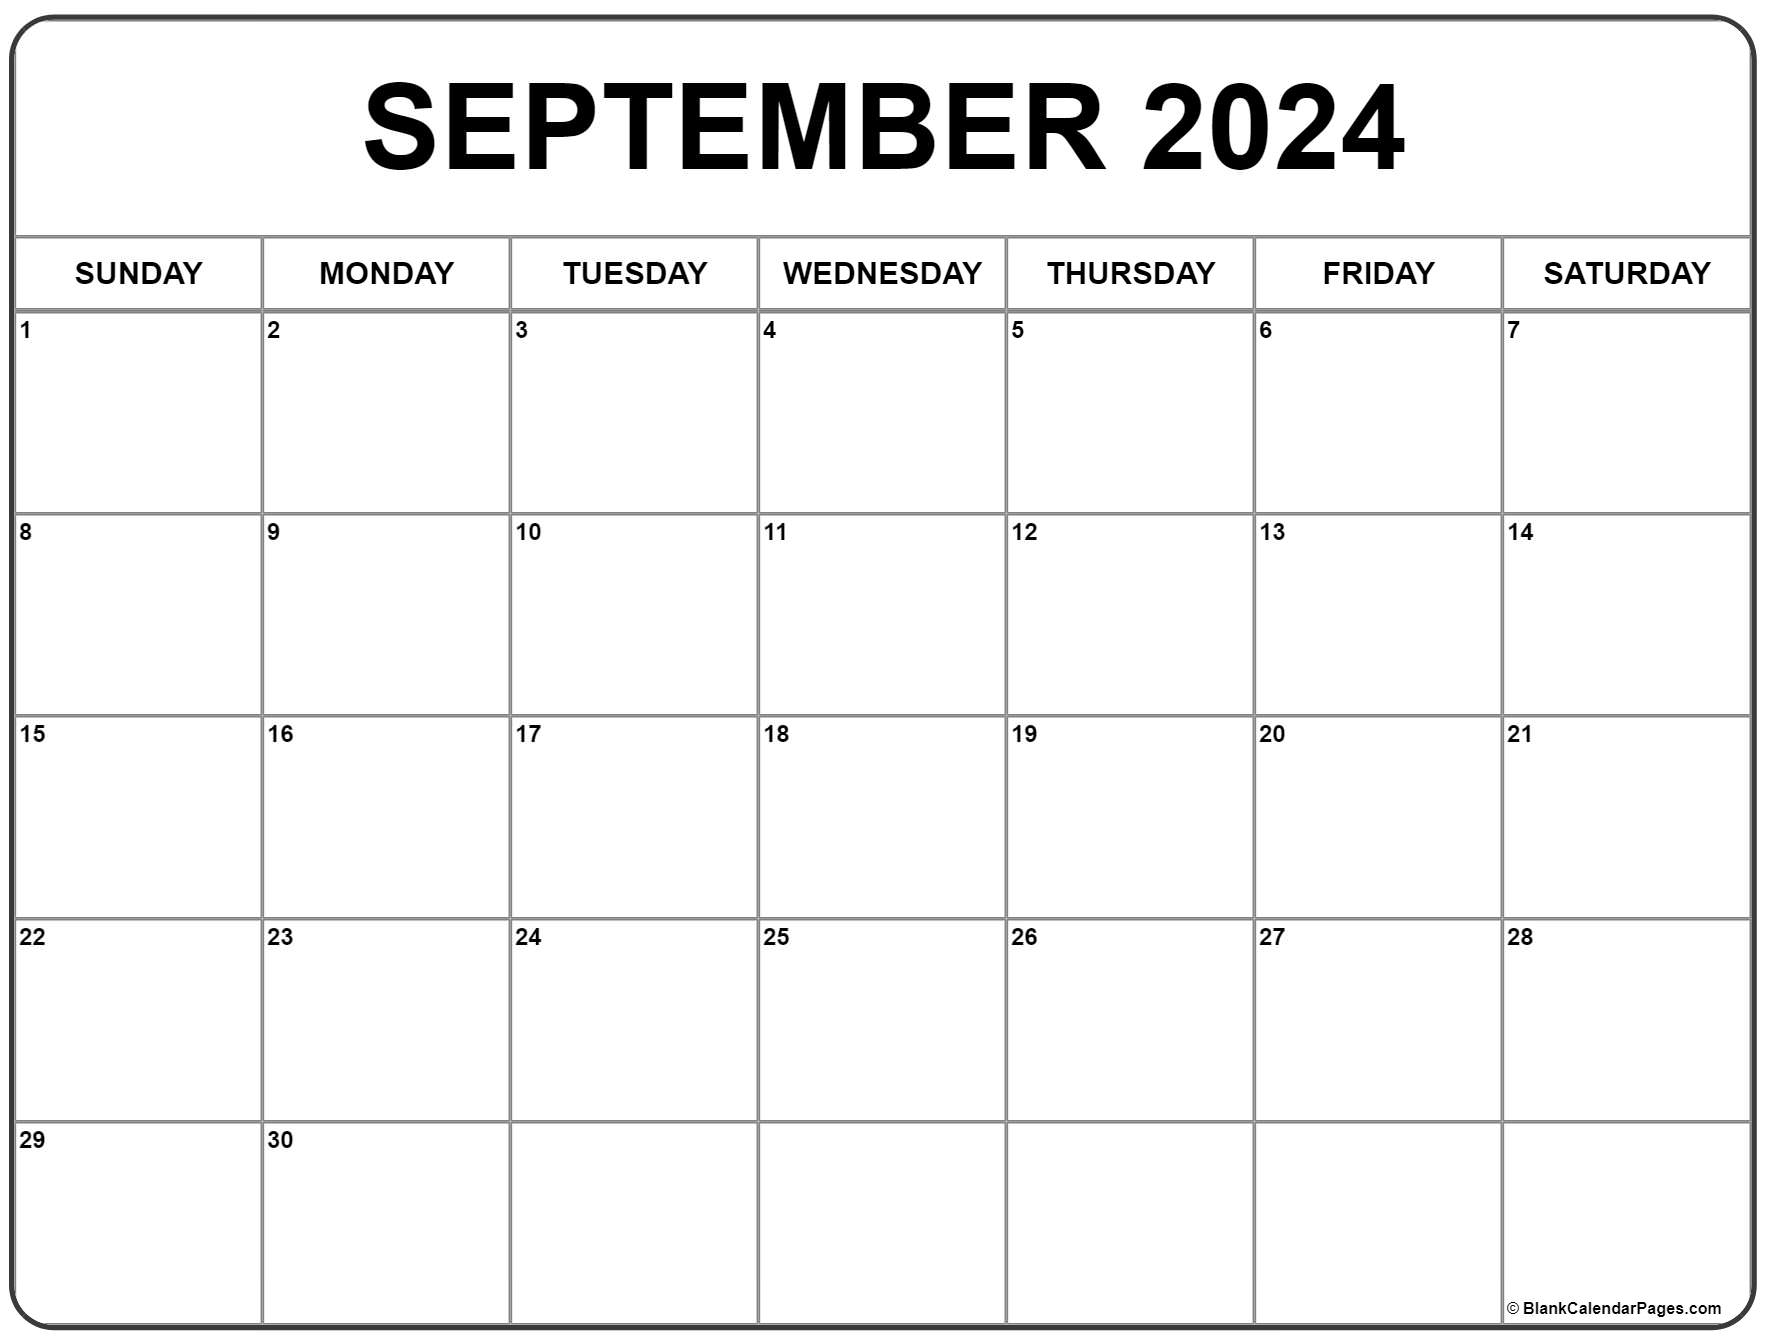 September 2024 Calendar | Free Printable Calendar for Calendar Sept 2024 Printable